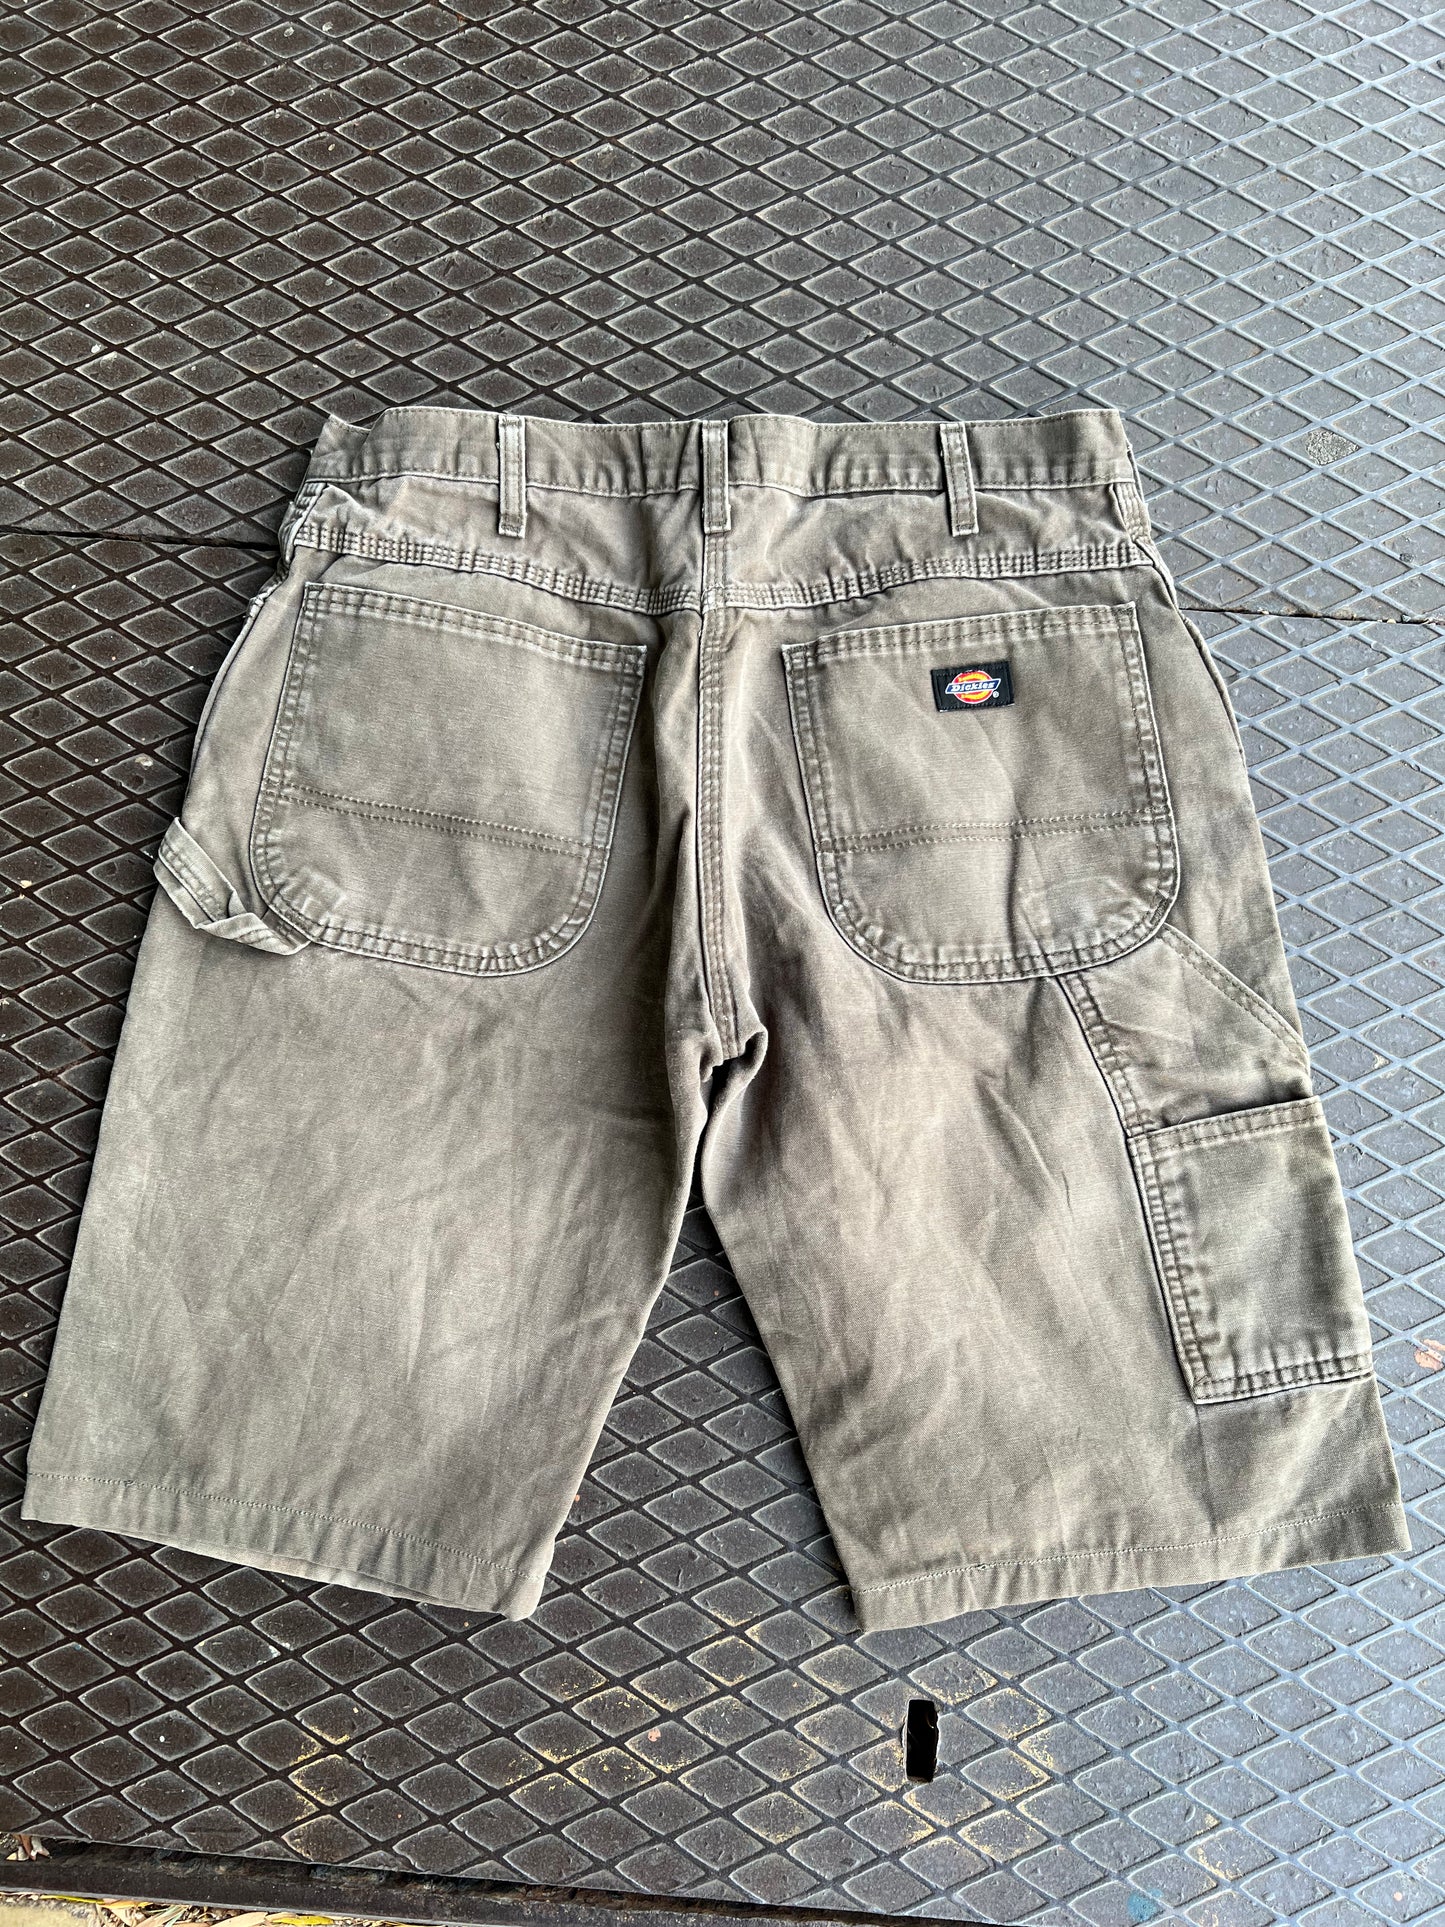 32 - Dickies Dark Brown/Grey Carpenter Shorts